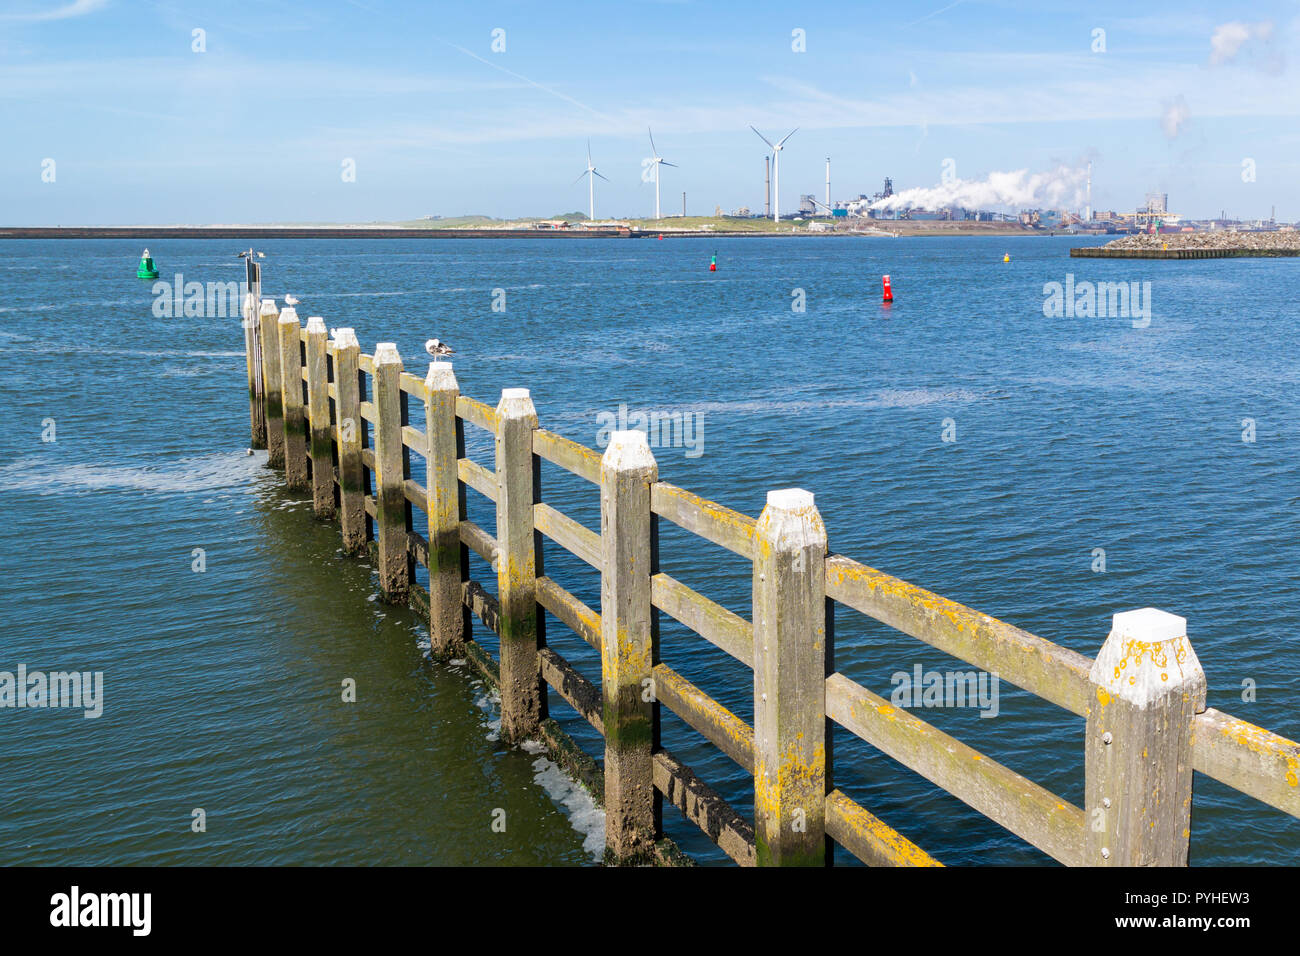 Canal de la mer du Nord et de l'acier usine au port maritime IJmuiden près d'Amsterdam, Pays-Bas Banque D'Images